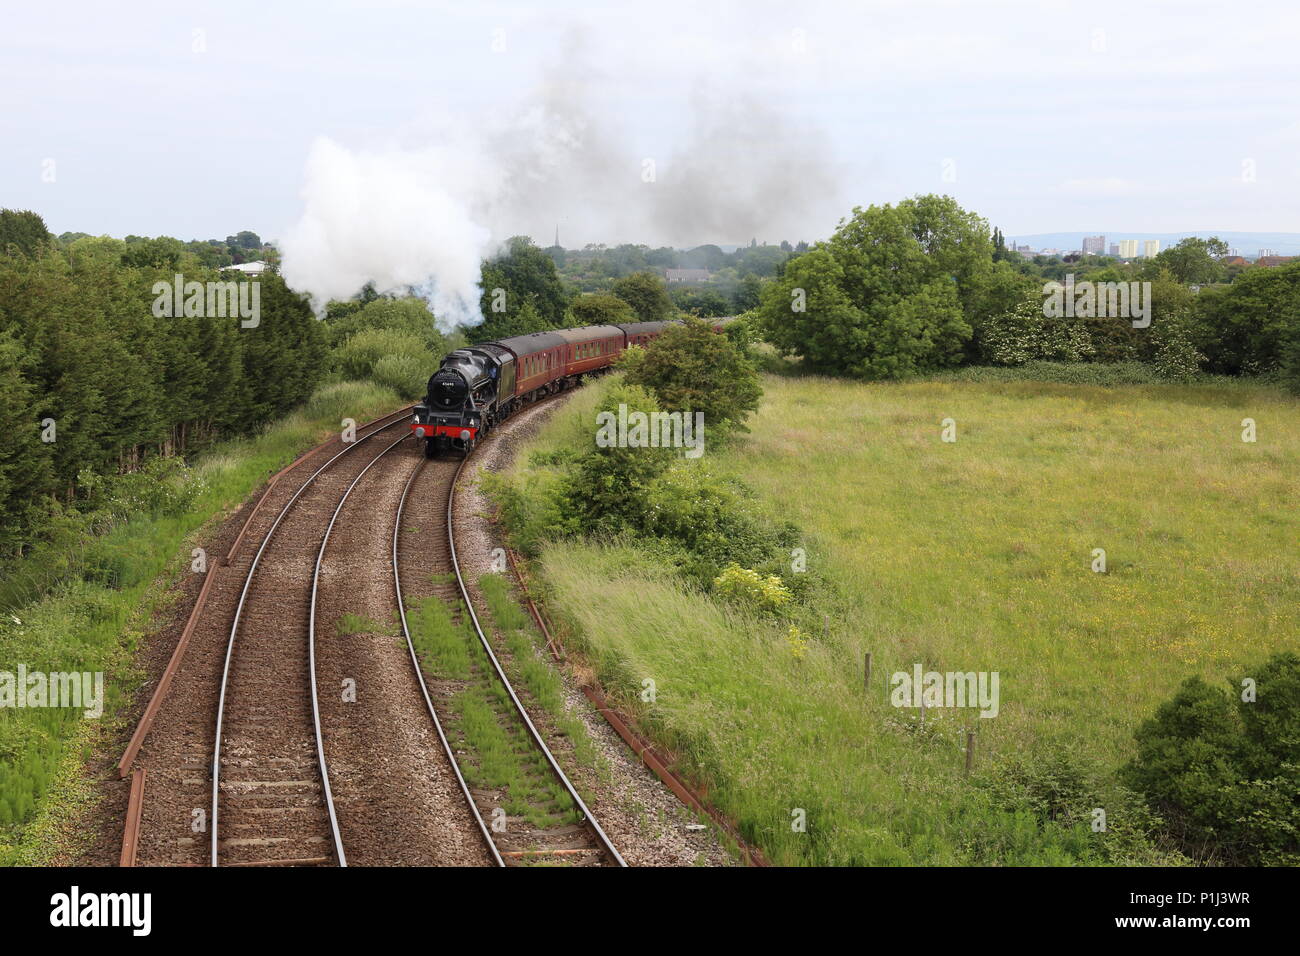 Il Fellsman locomotiva a vapore conduce i suoi carrelli attorno alla curva Farington sul suo viaggio fino il Settle Carlisle trogolo ferroviaria Lancashire campagna. Foto Stock